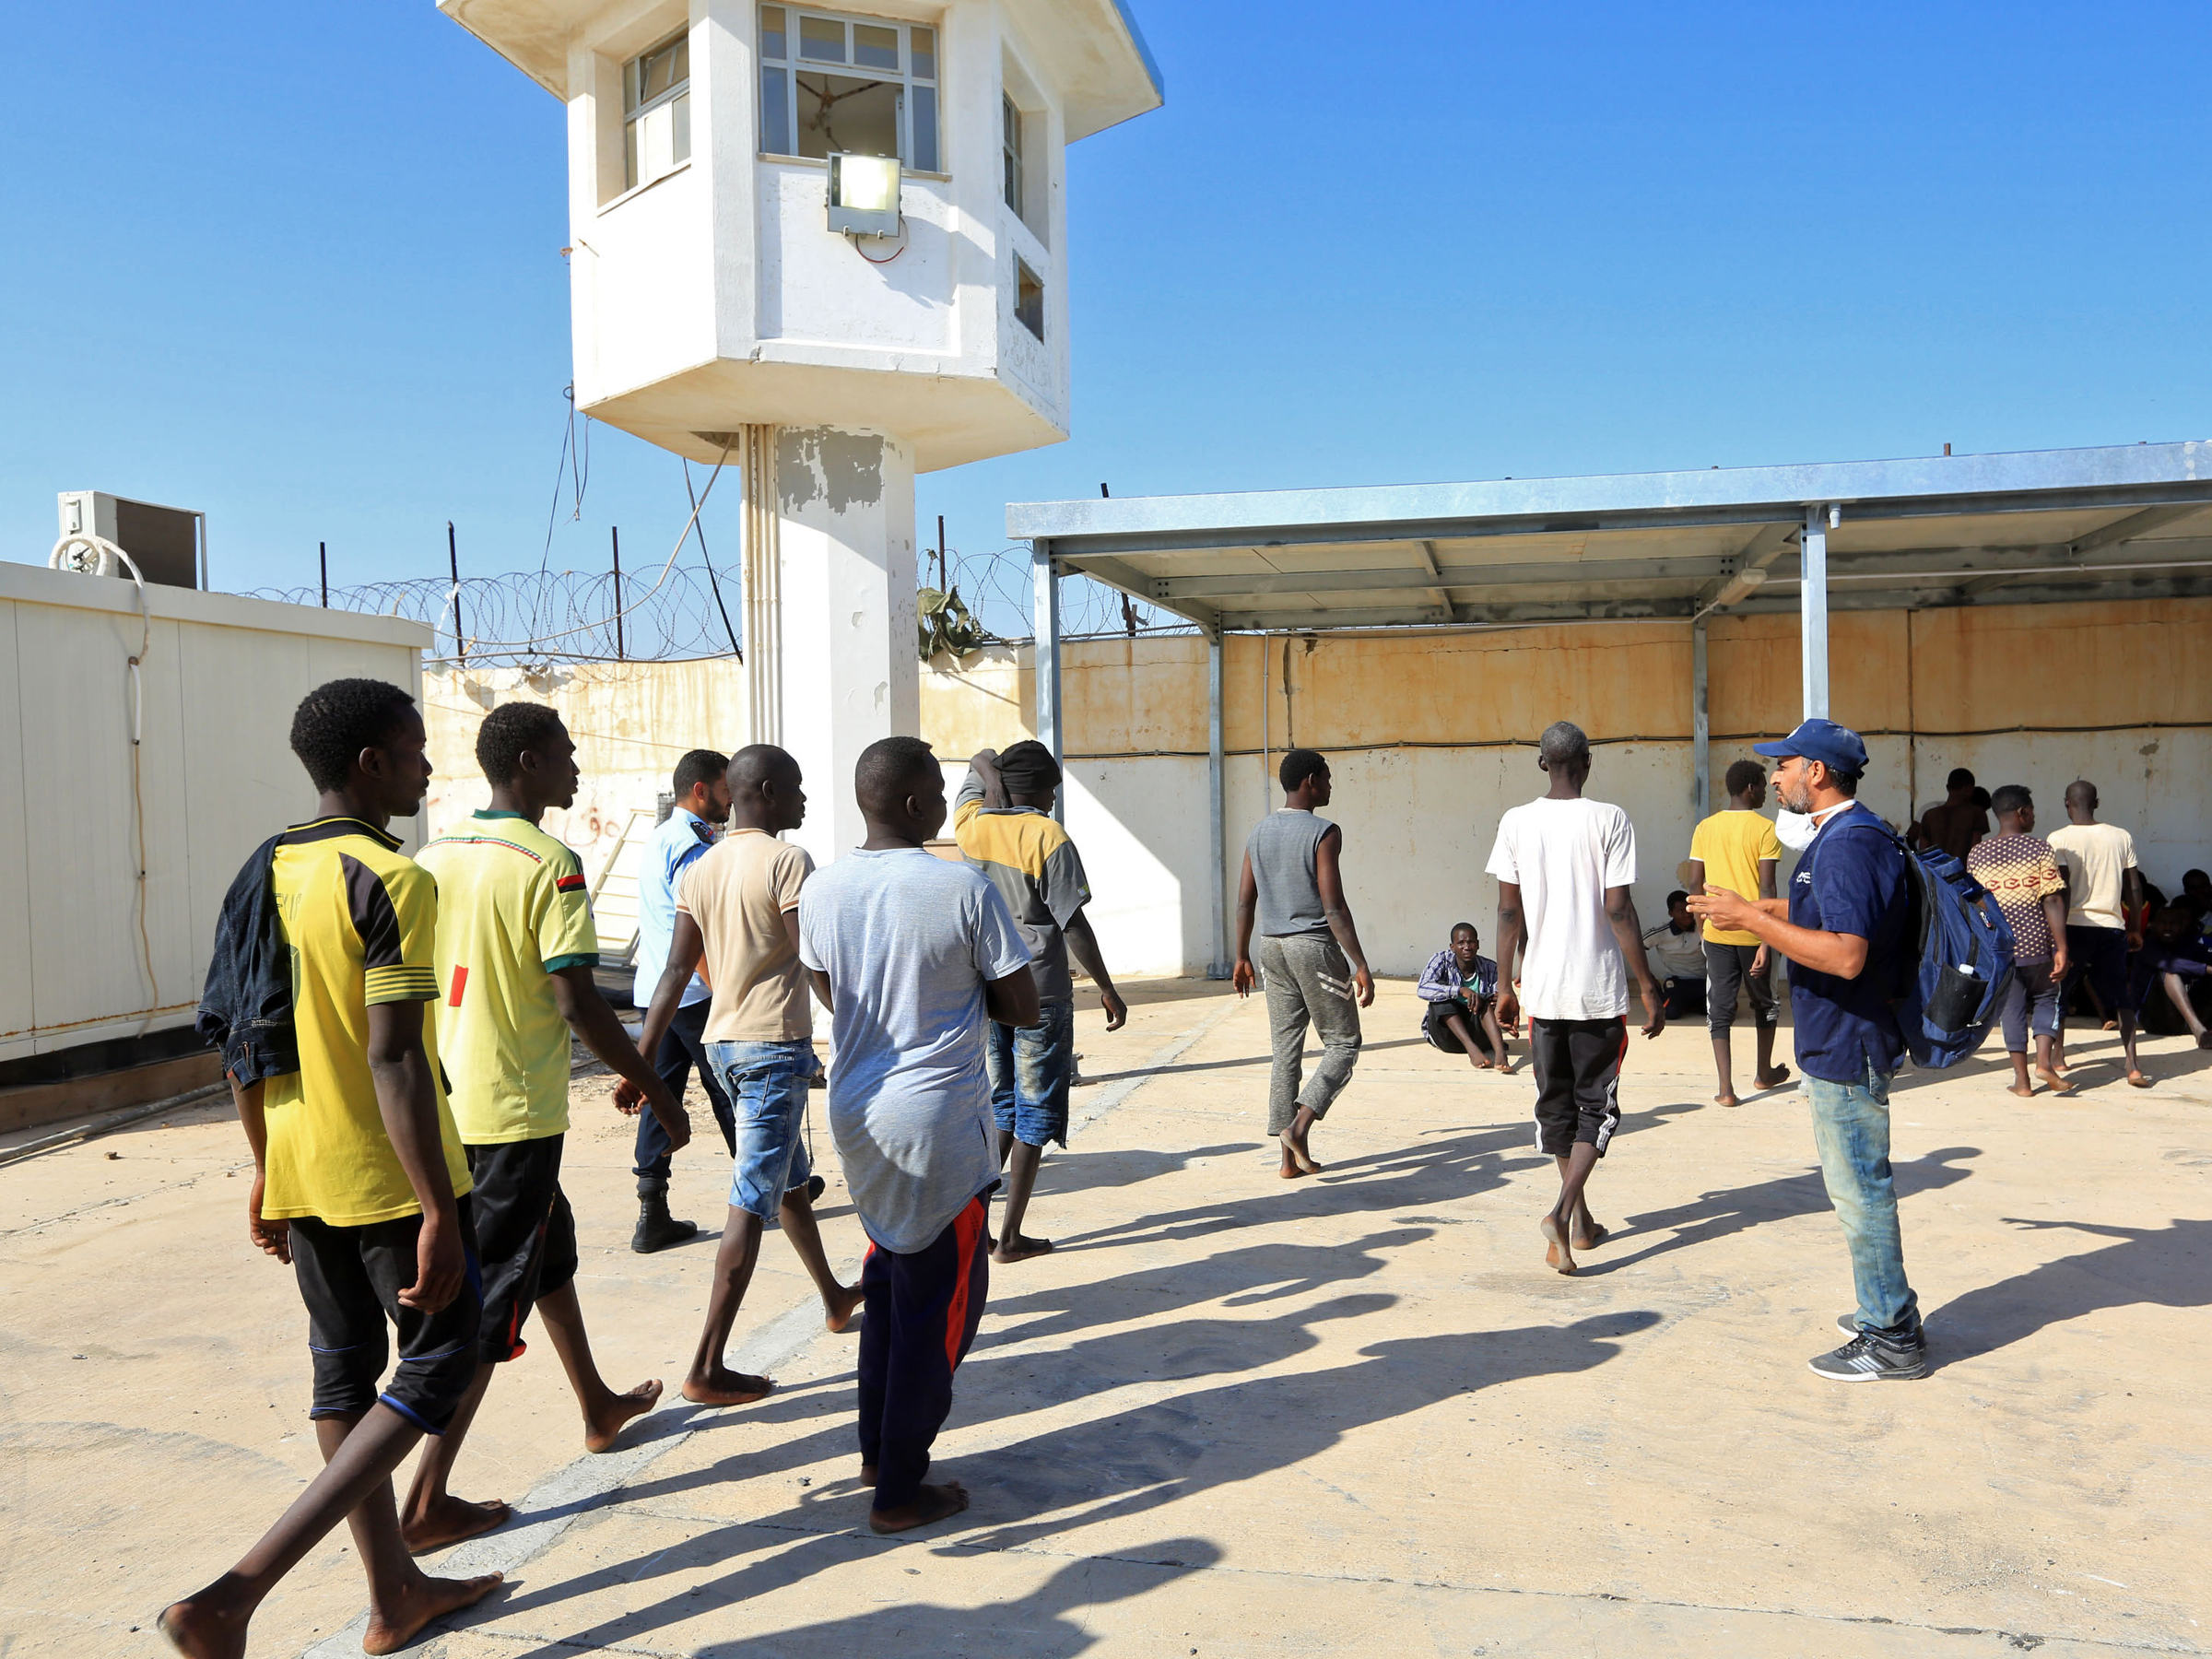 Wer nicht fragt, bleibt dumm | Flüchtlingslager in Libyen – 2400 x 1800